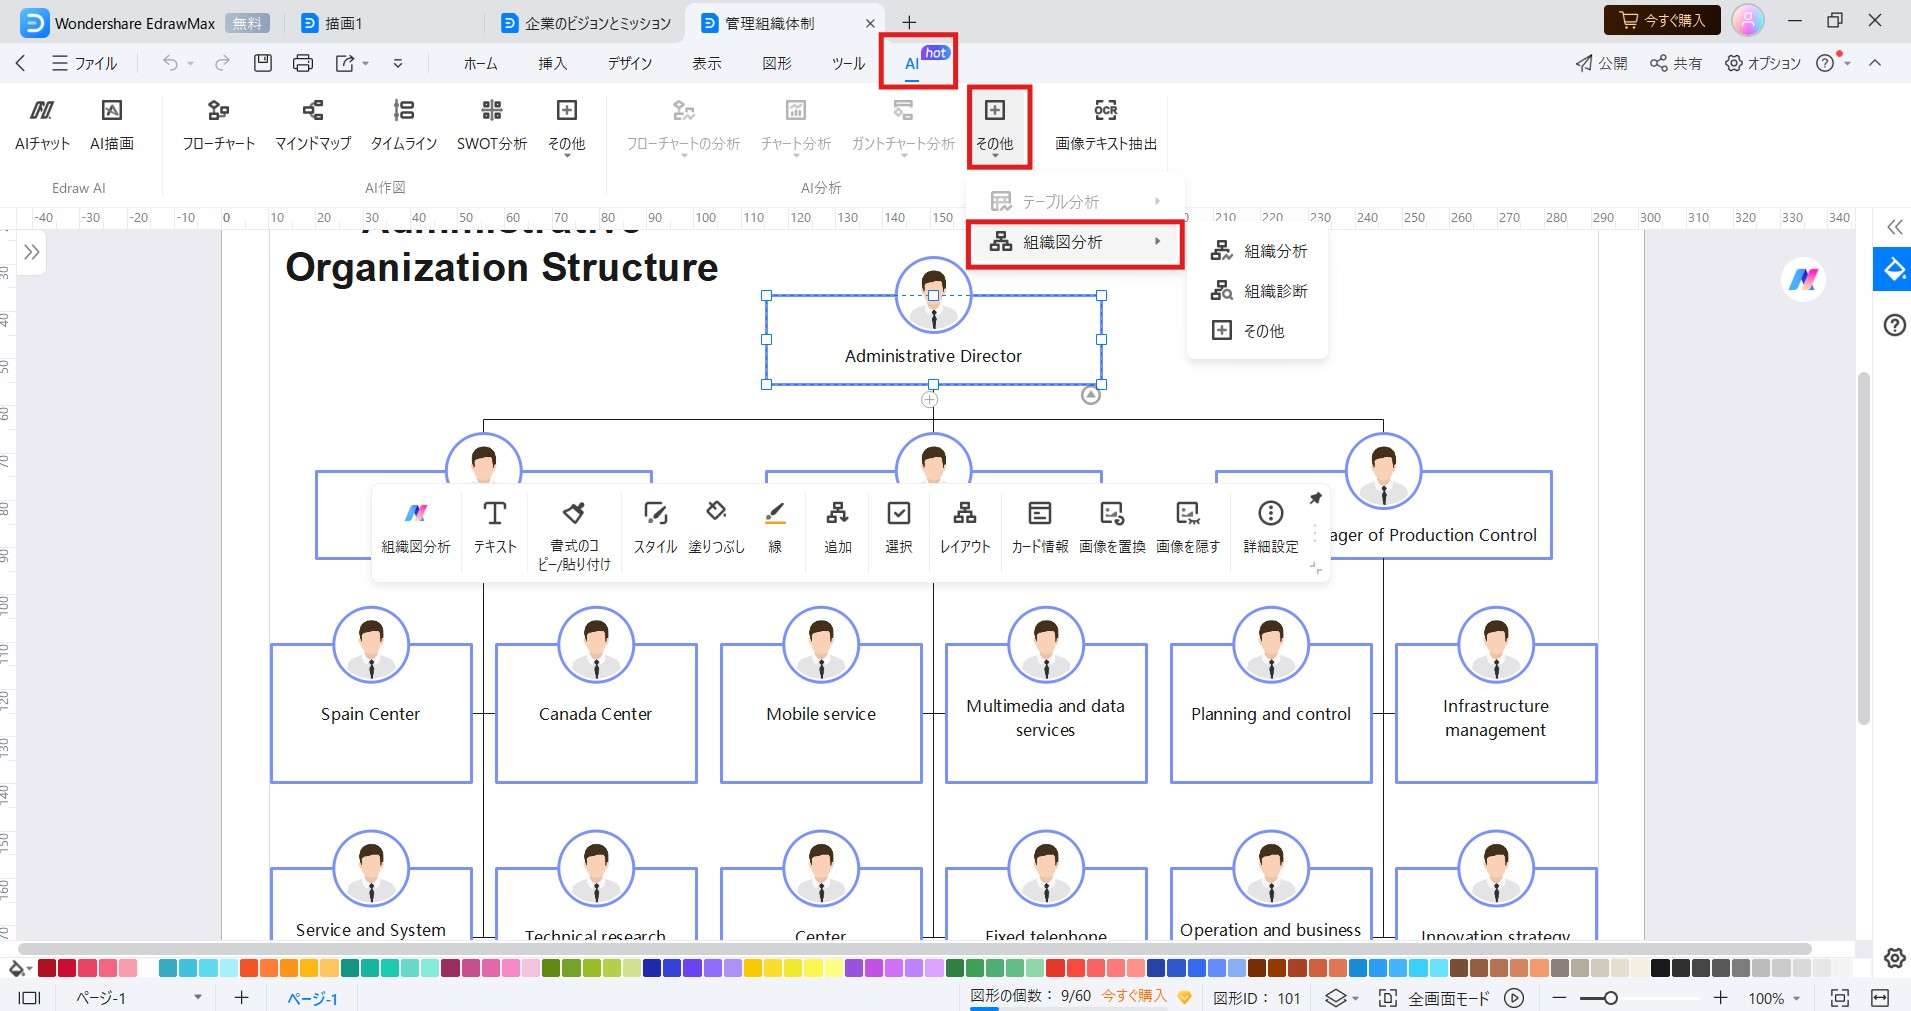 organizational chart analysis